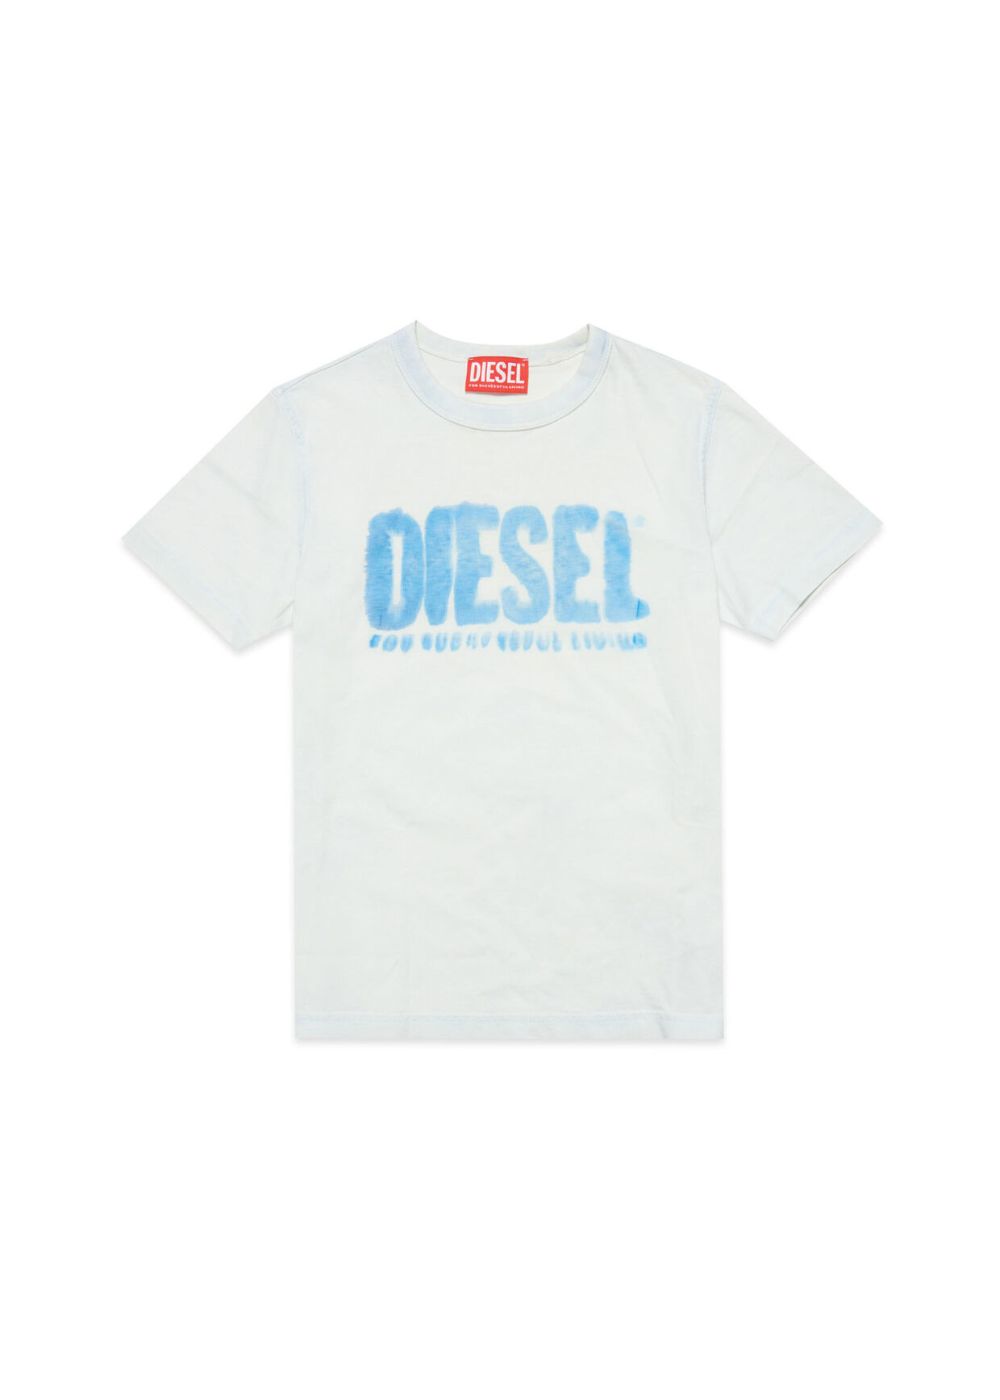 Featured image for “Diesel T-shirt con logo effetto schiarito”